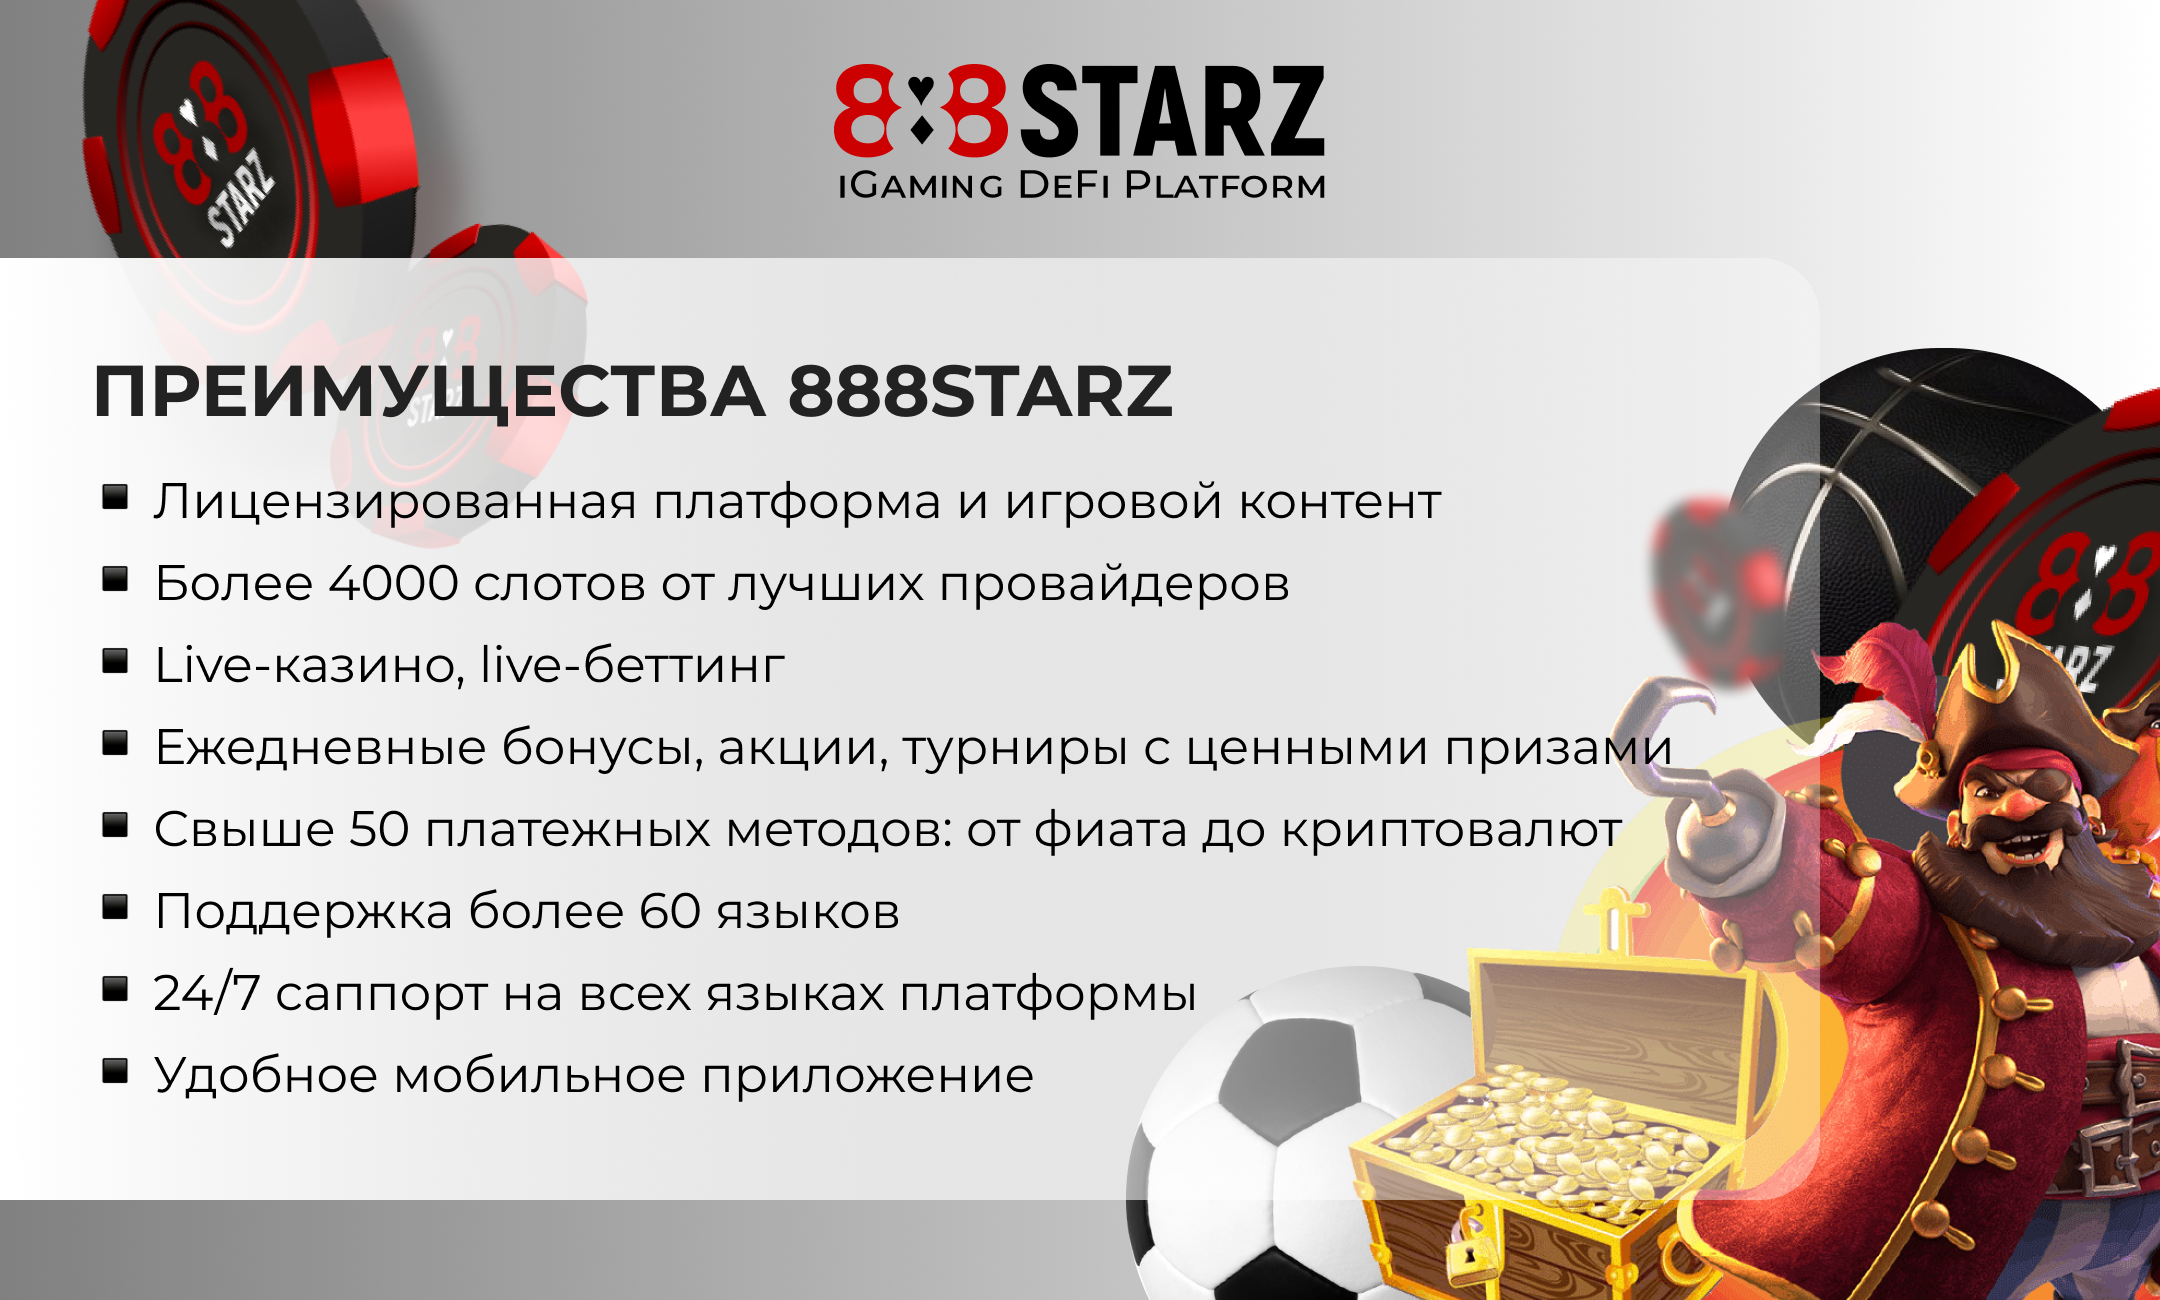 888starz bonus 888 starz net. 888starz бонус пятница. 888starz. IGAMING. 888 Starz букмекер и казино.